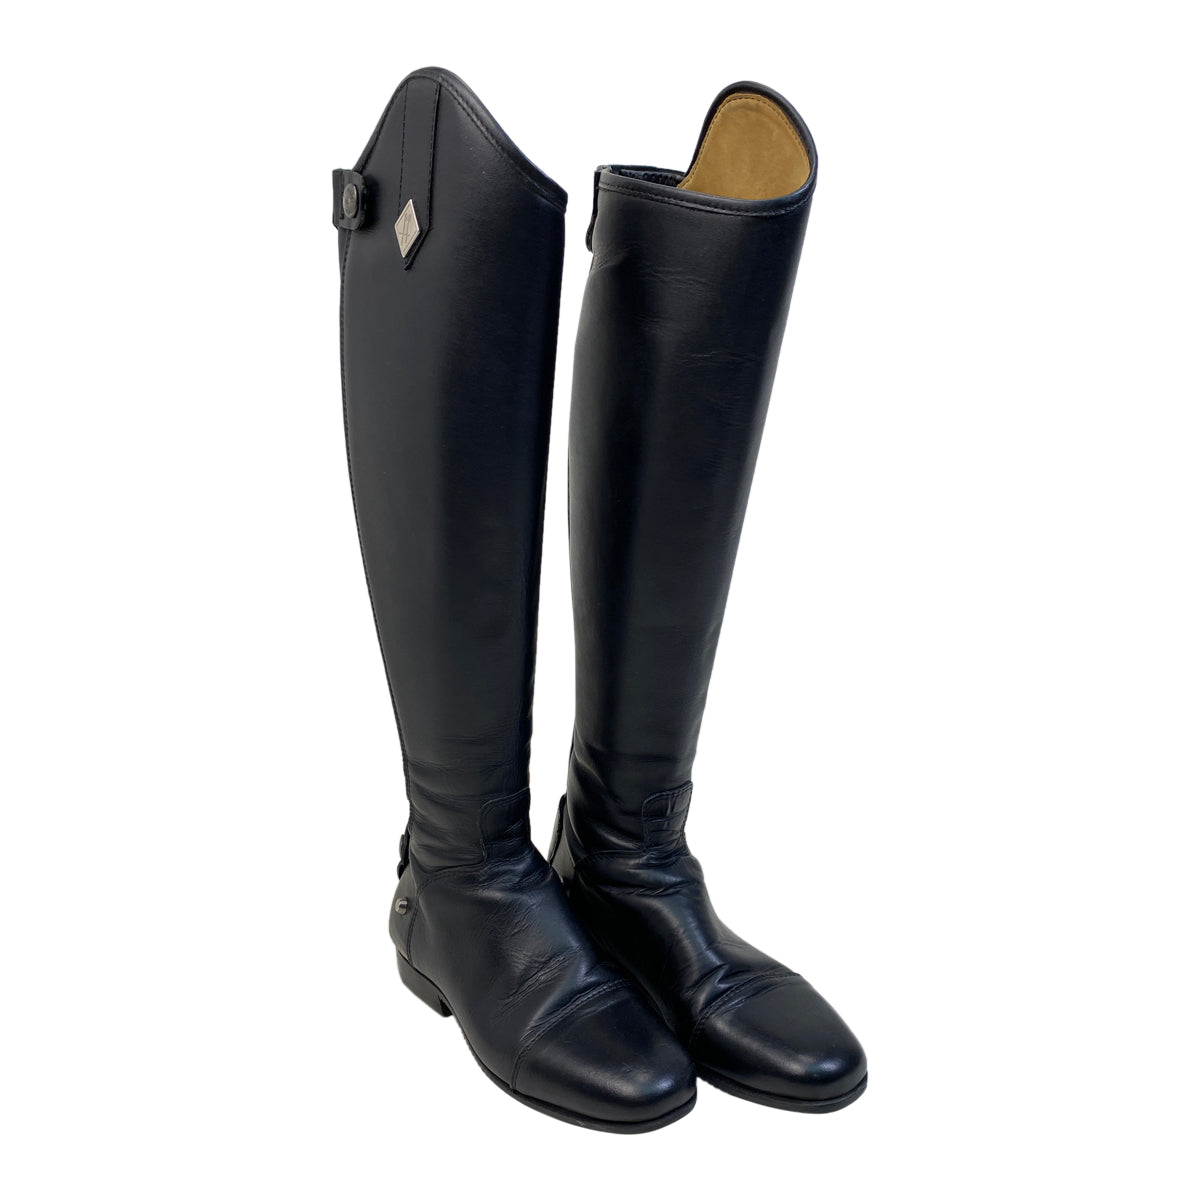 Fabbri Pro Dress Boots in Black